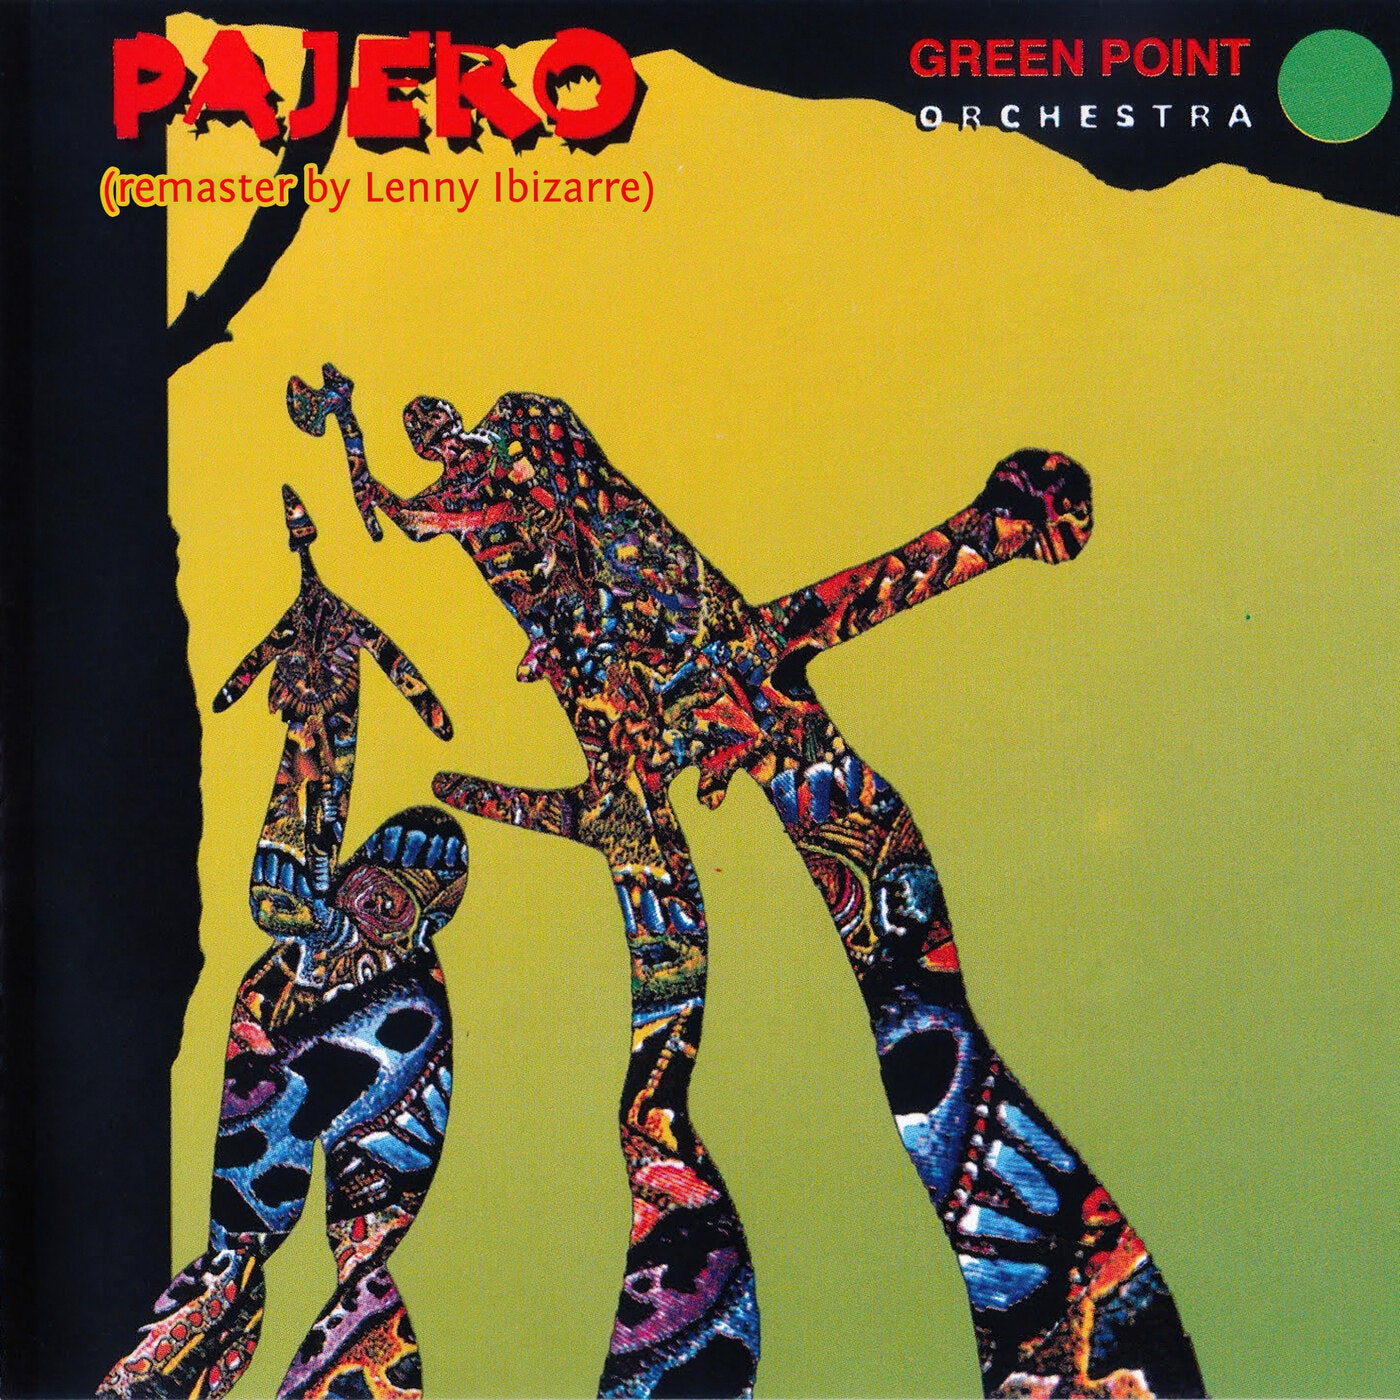 Pajero (Remastered by Lenny Ibizarre)